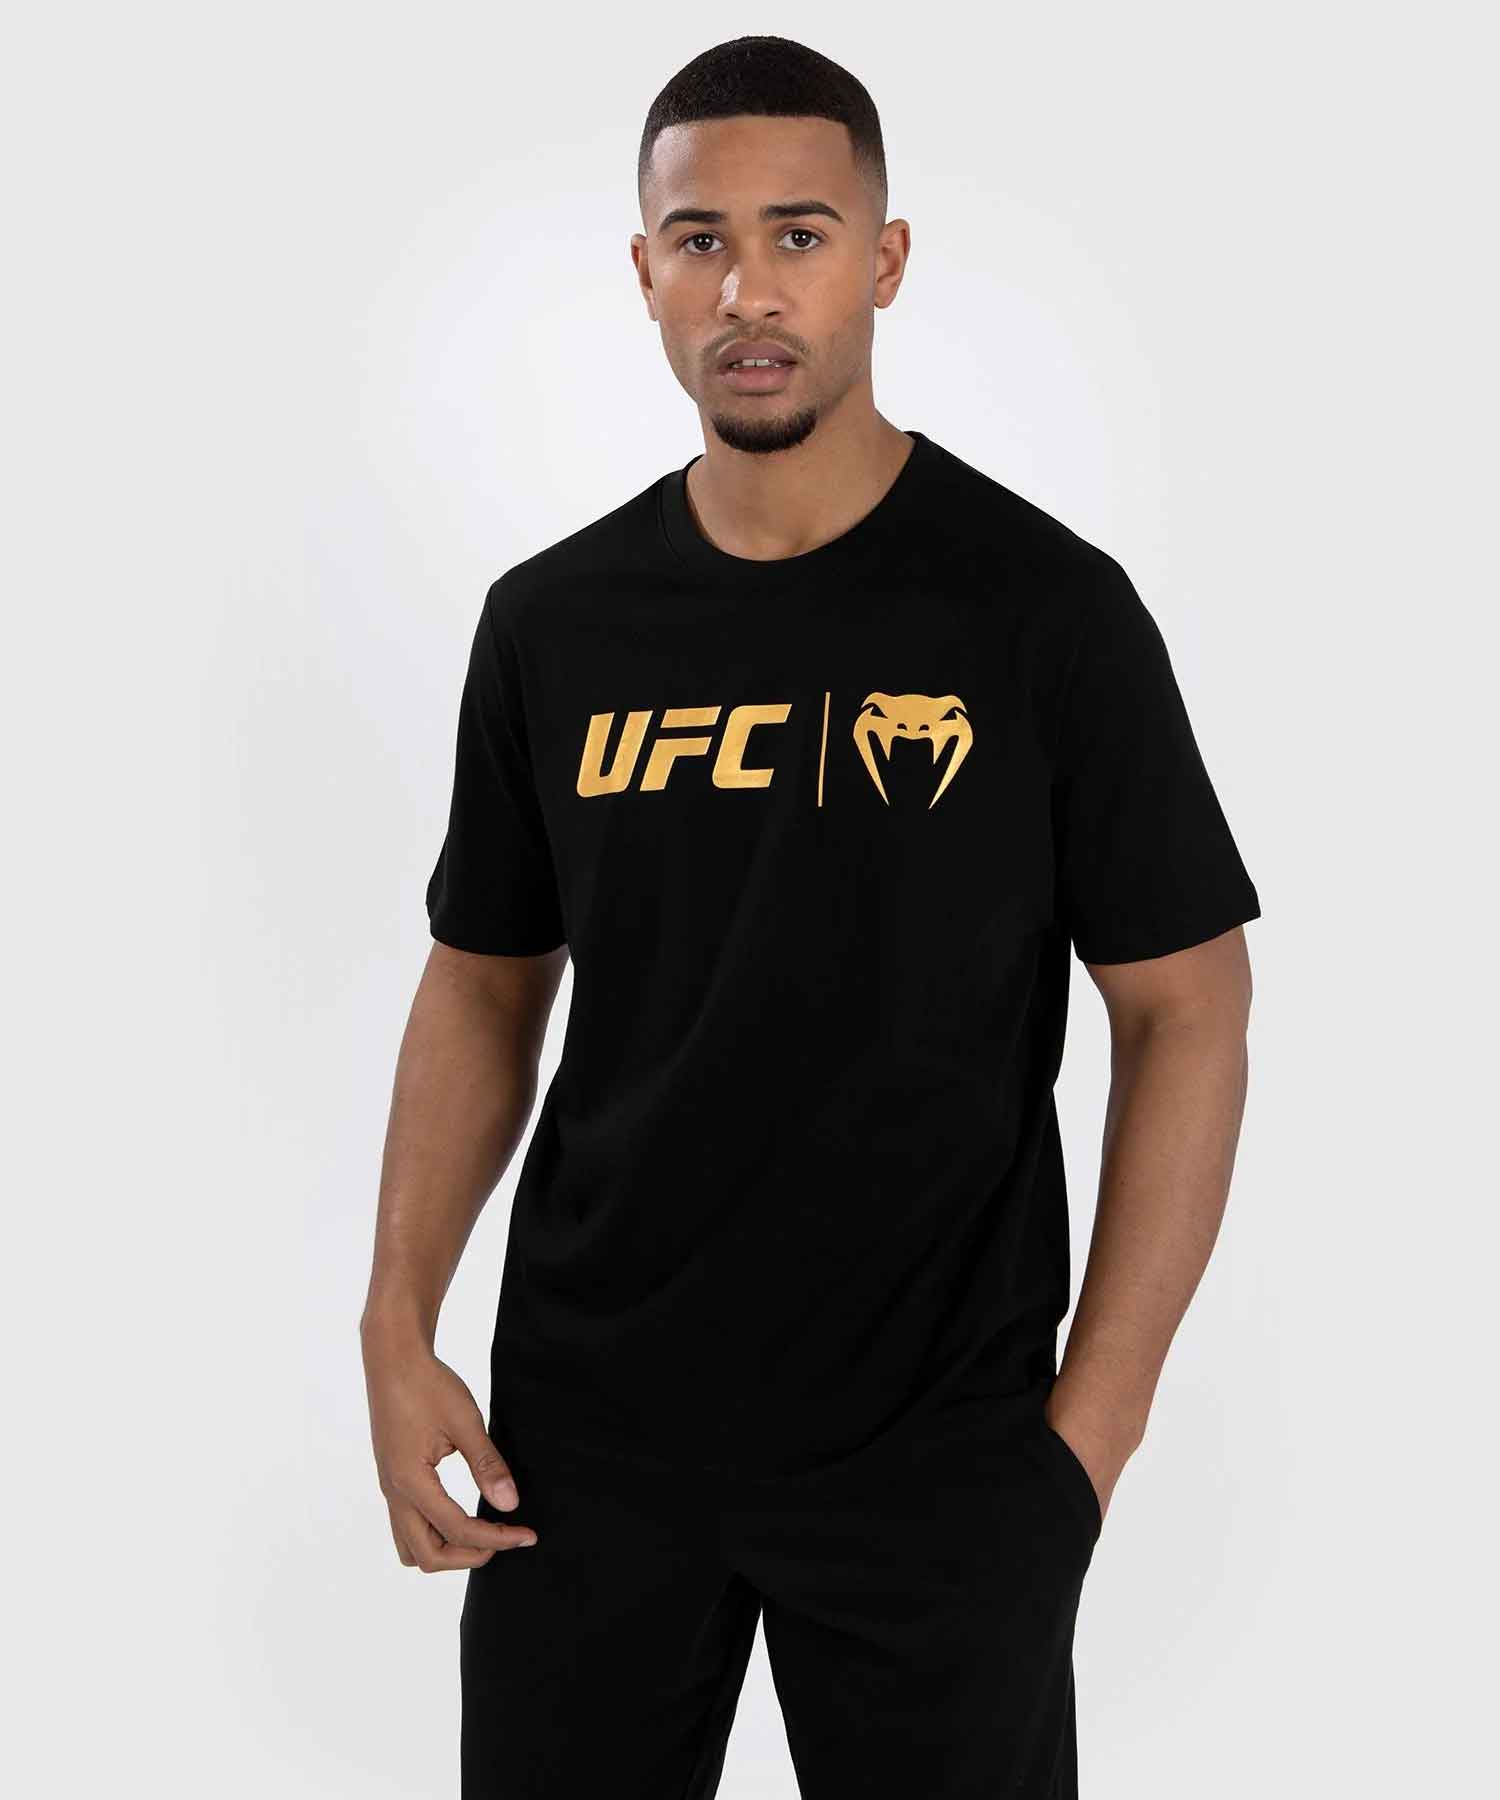 UFC Venum Classic T-Shirt／UFC VENUM クラシック Tシャツ（黒／ゴールド）